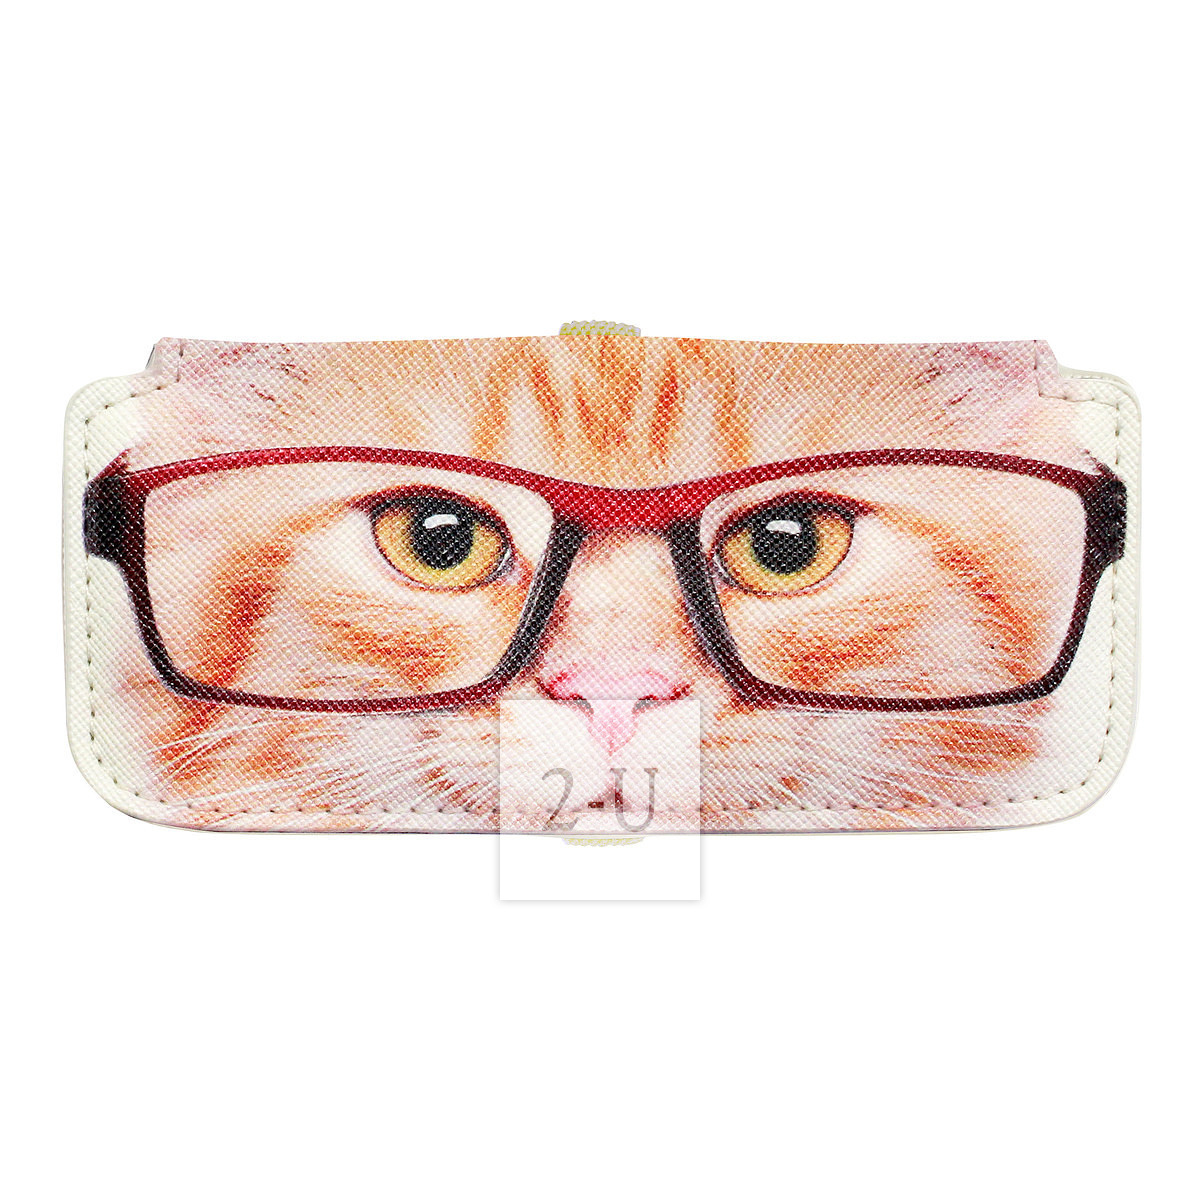 小巧眼镜盒 动物图案之金渐层虎斑猫